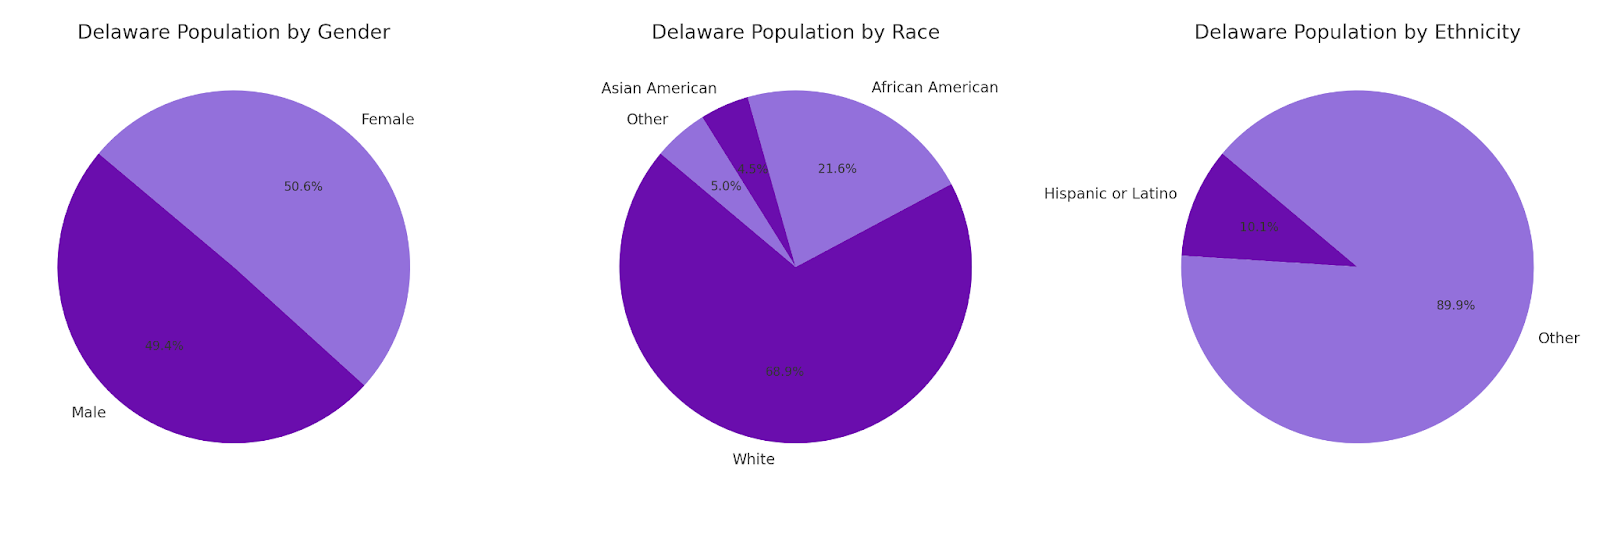 Delaware Demographics